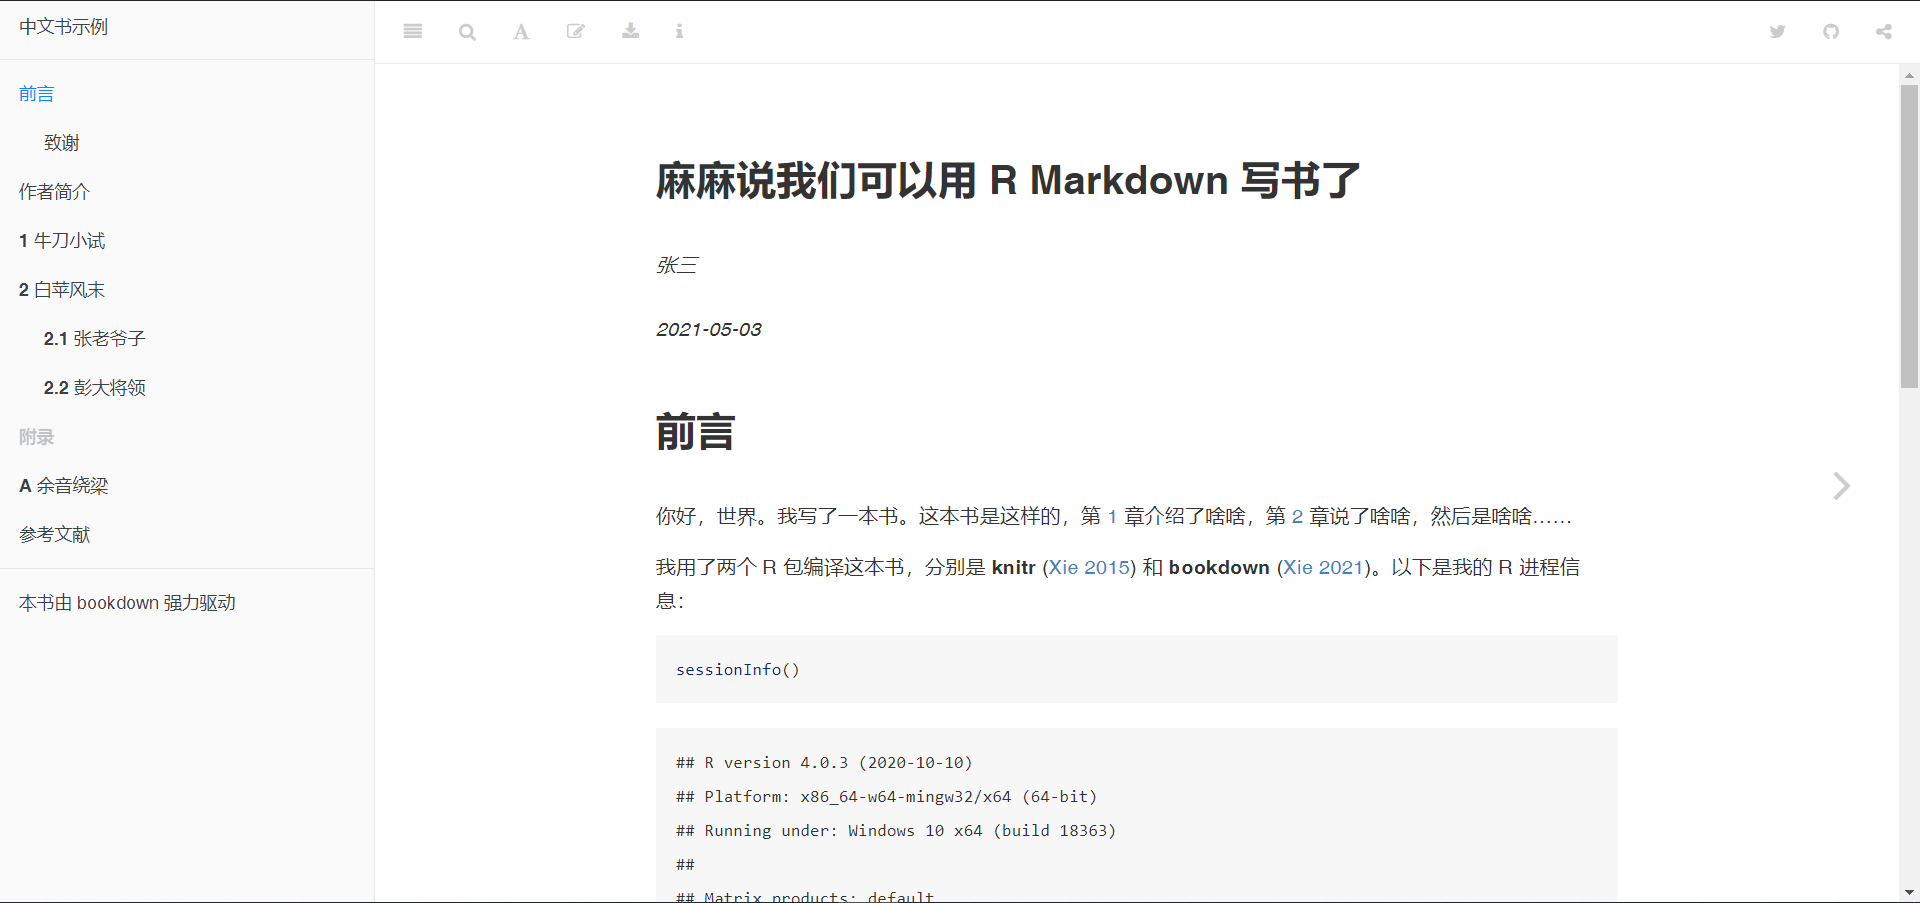 使用 bookdown 制作的中文图书范例, 一个章节对应一个 R Markdown 文档